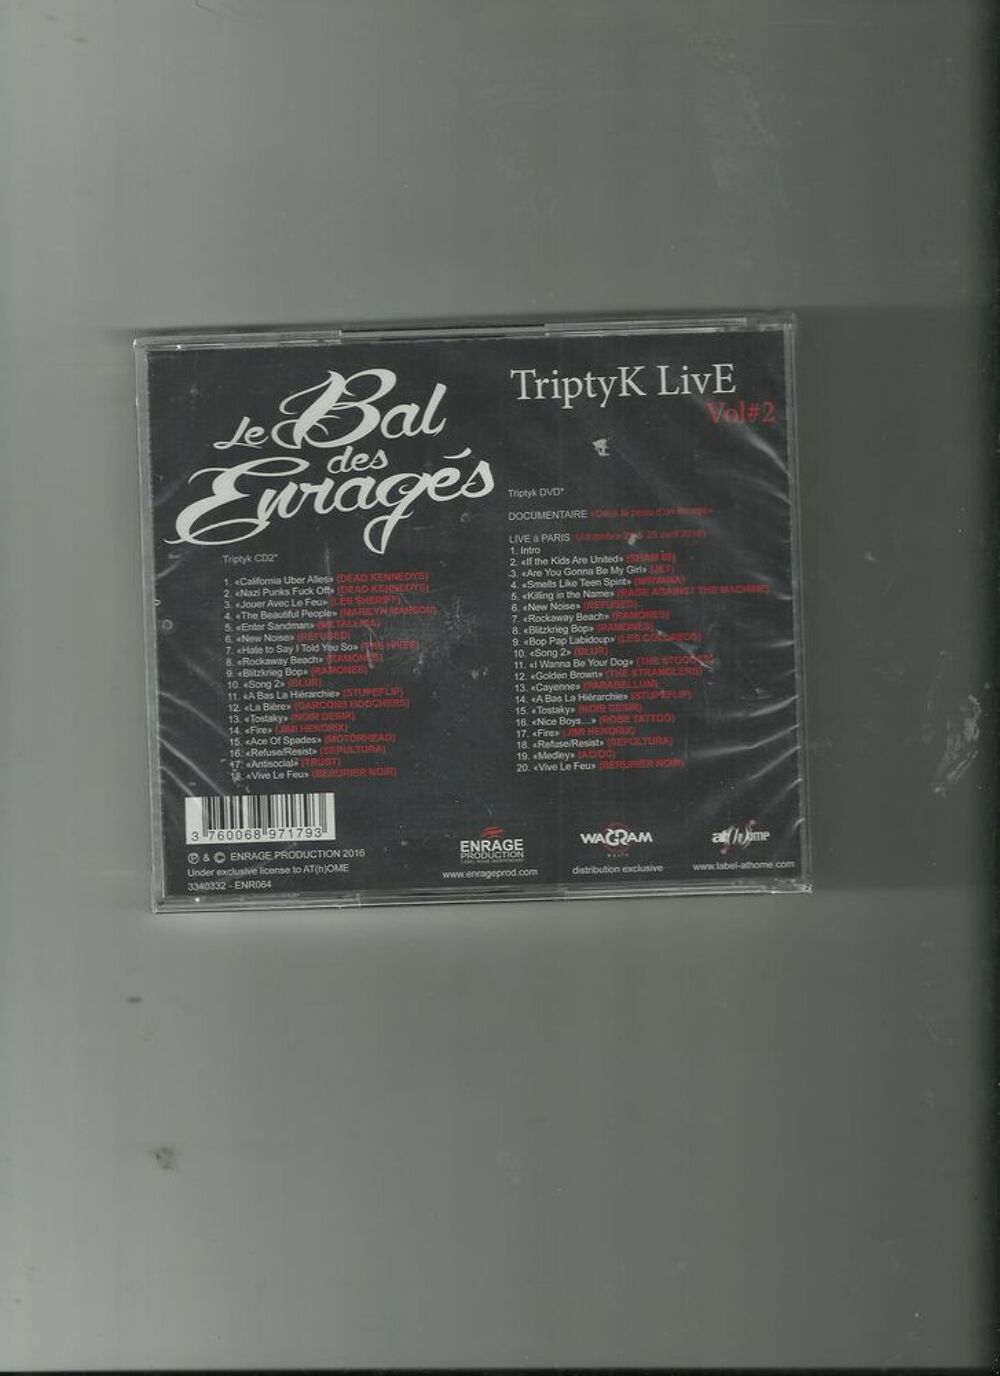 
Triptyk (Nvelle ed.) CD+DVD
Le Bal des Enrages (Artiste) CD et vinyles